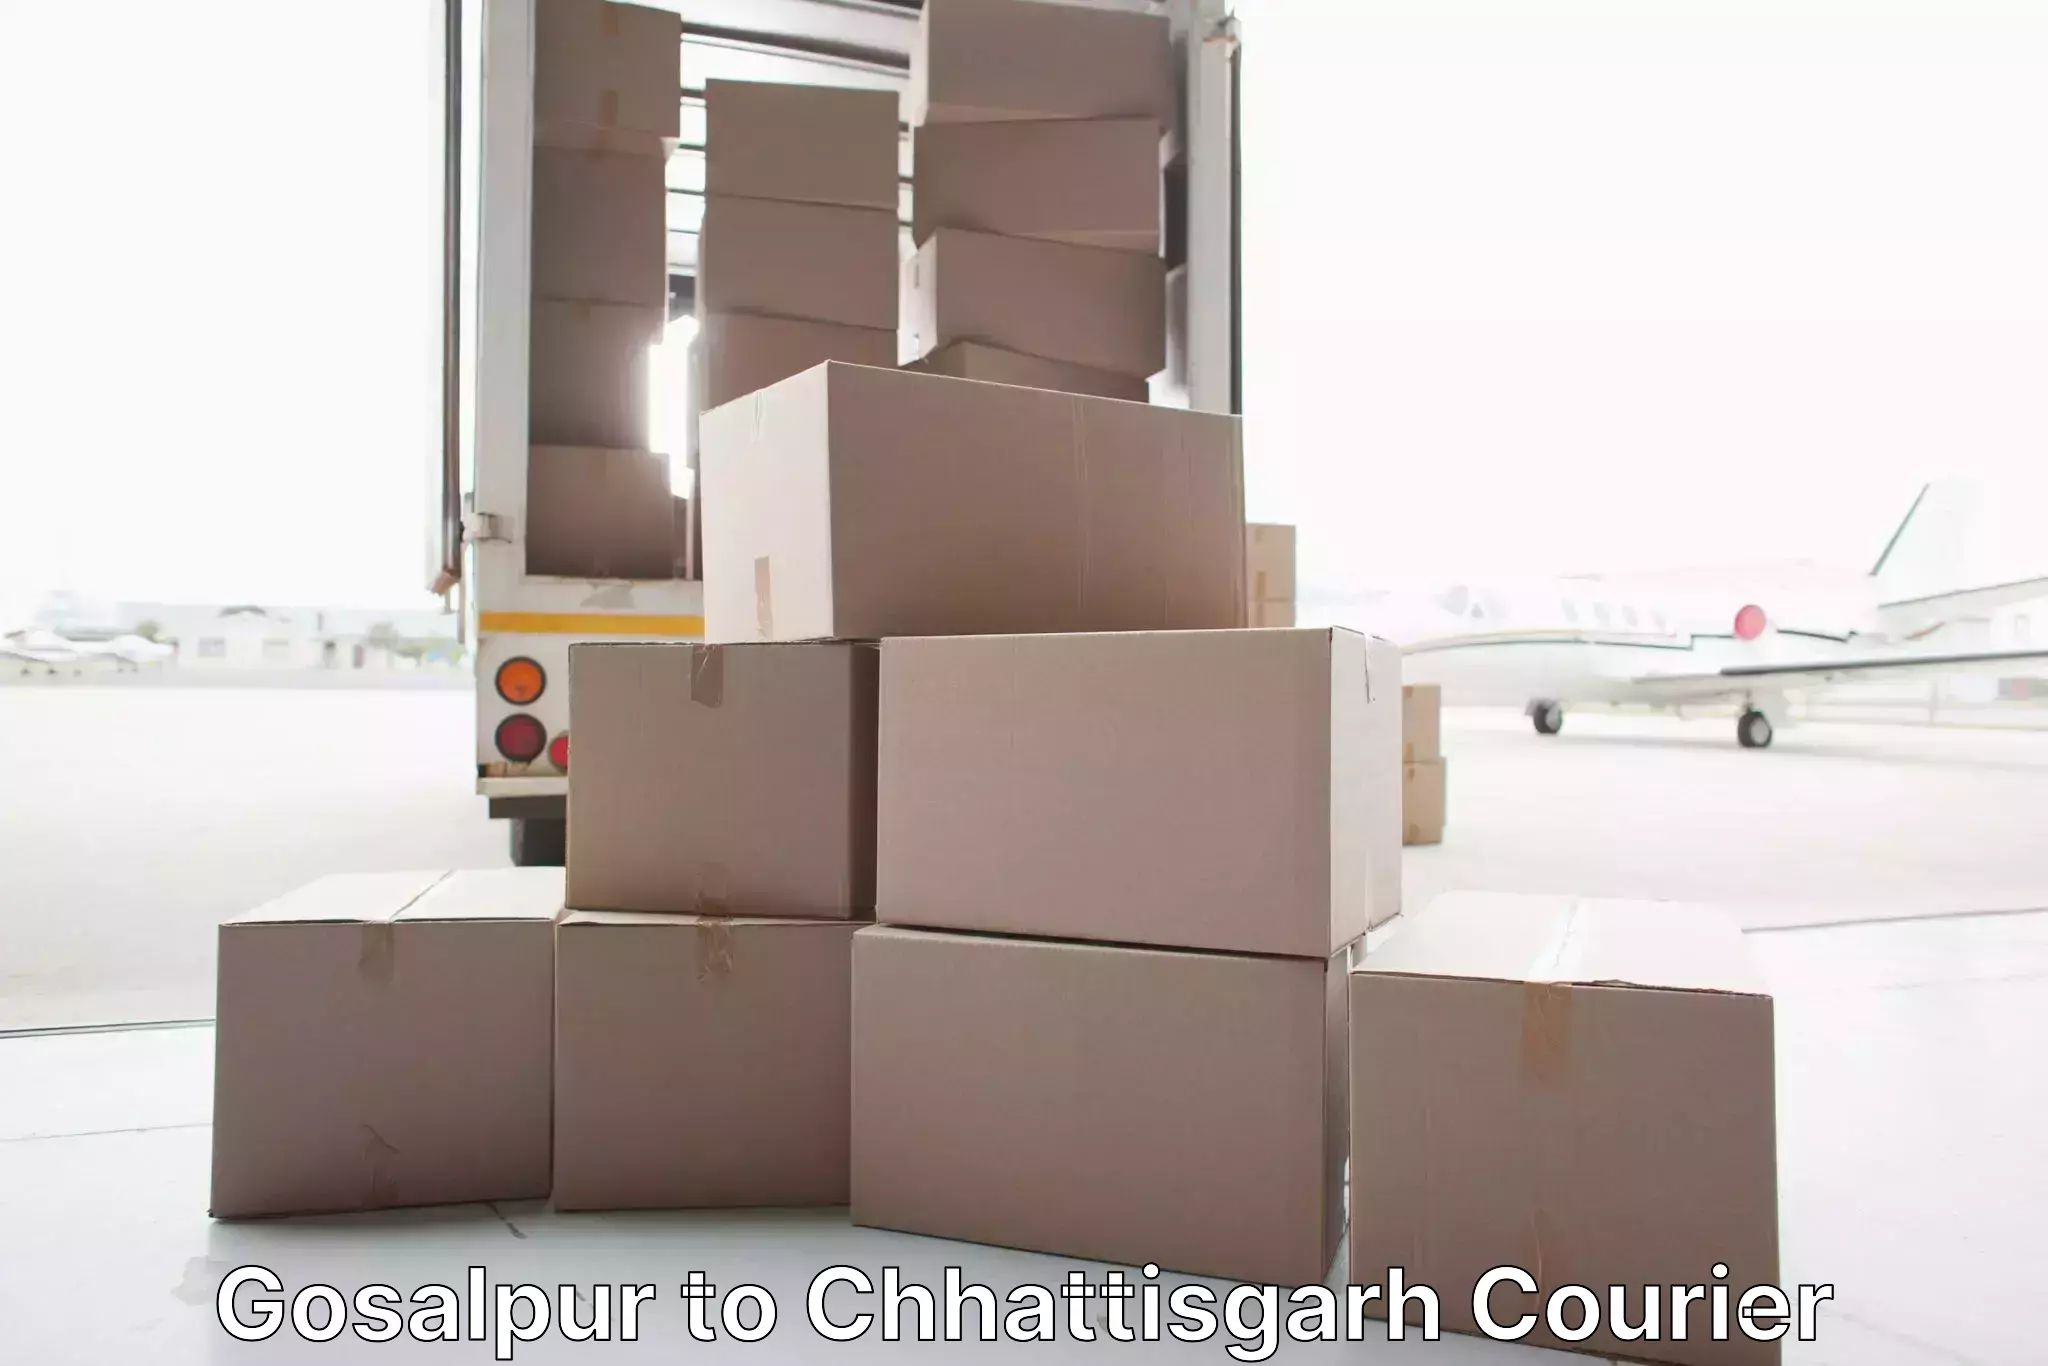 Home shifting experts Gosalpur to Patna Chhattisgarh